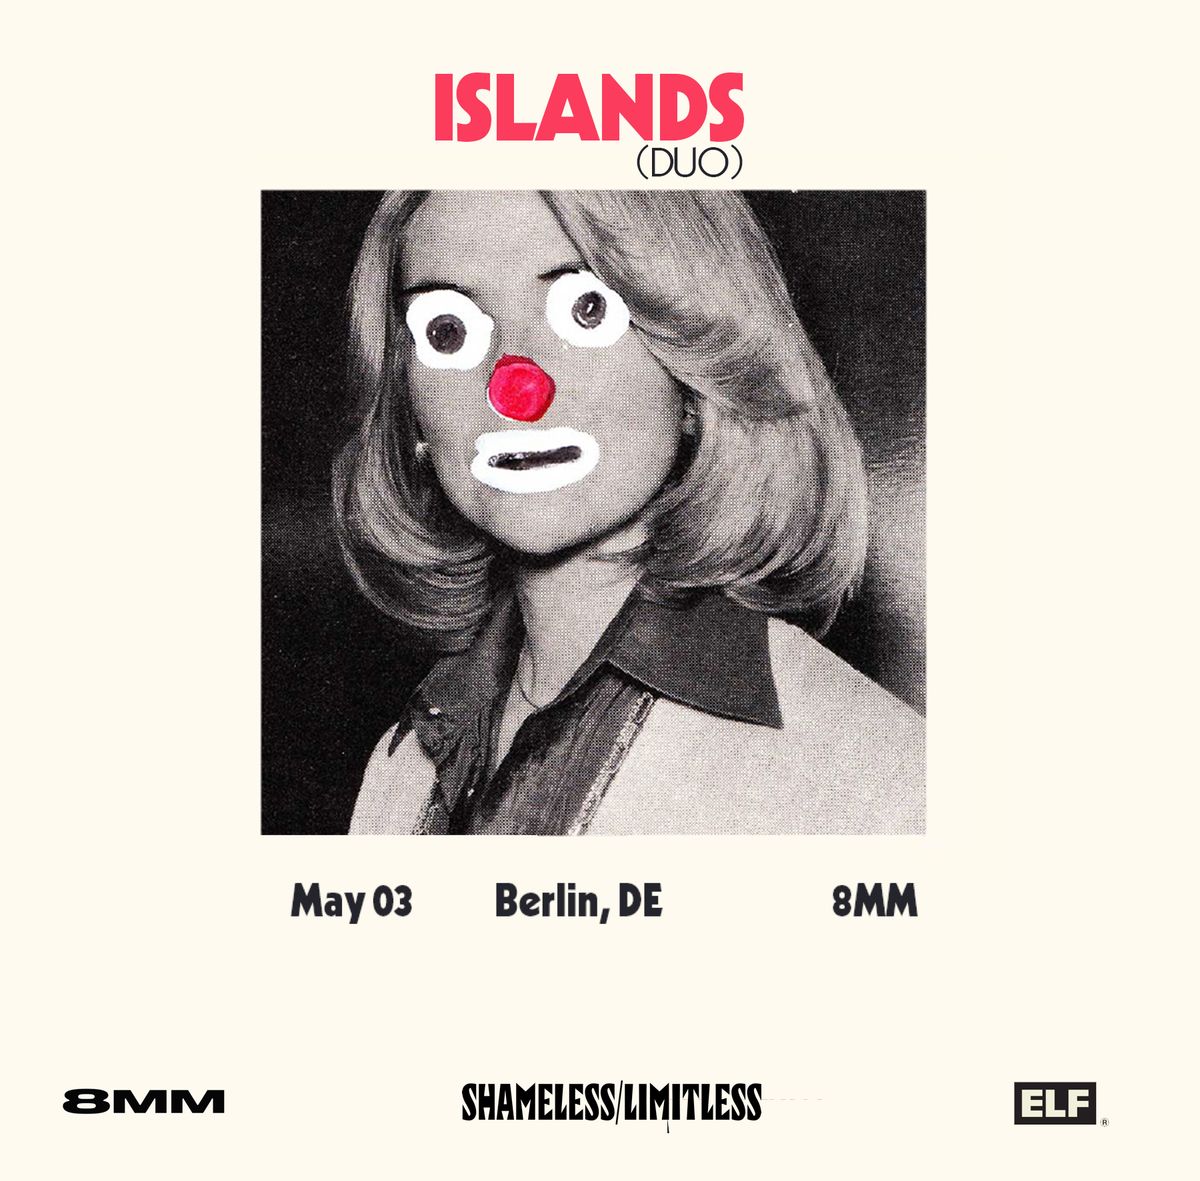 8MM + Shameless\/Limitless Present: ISLANDS (duo)